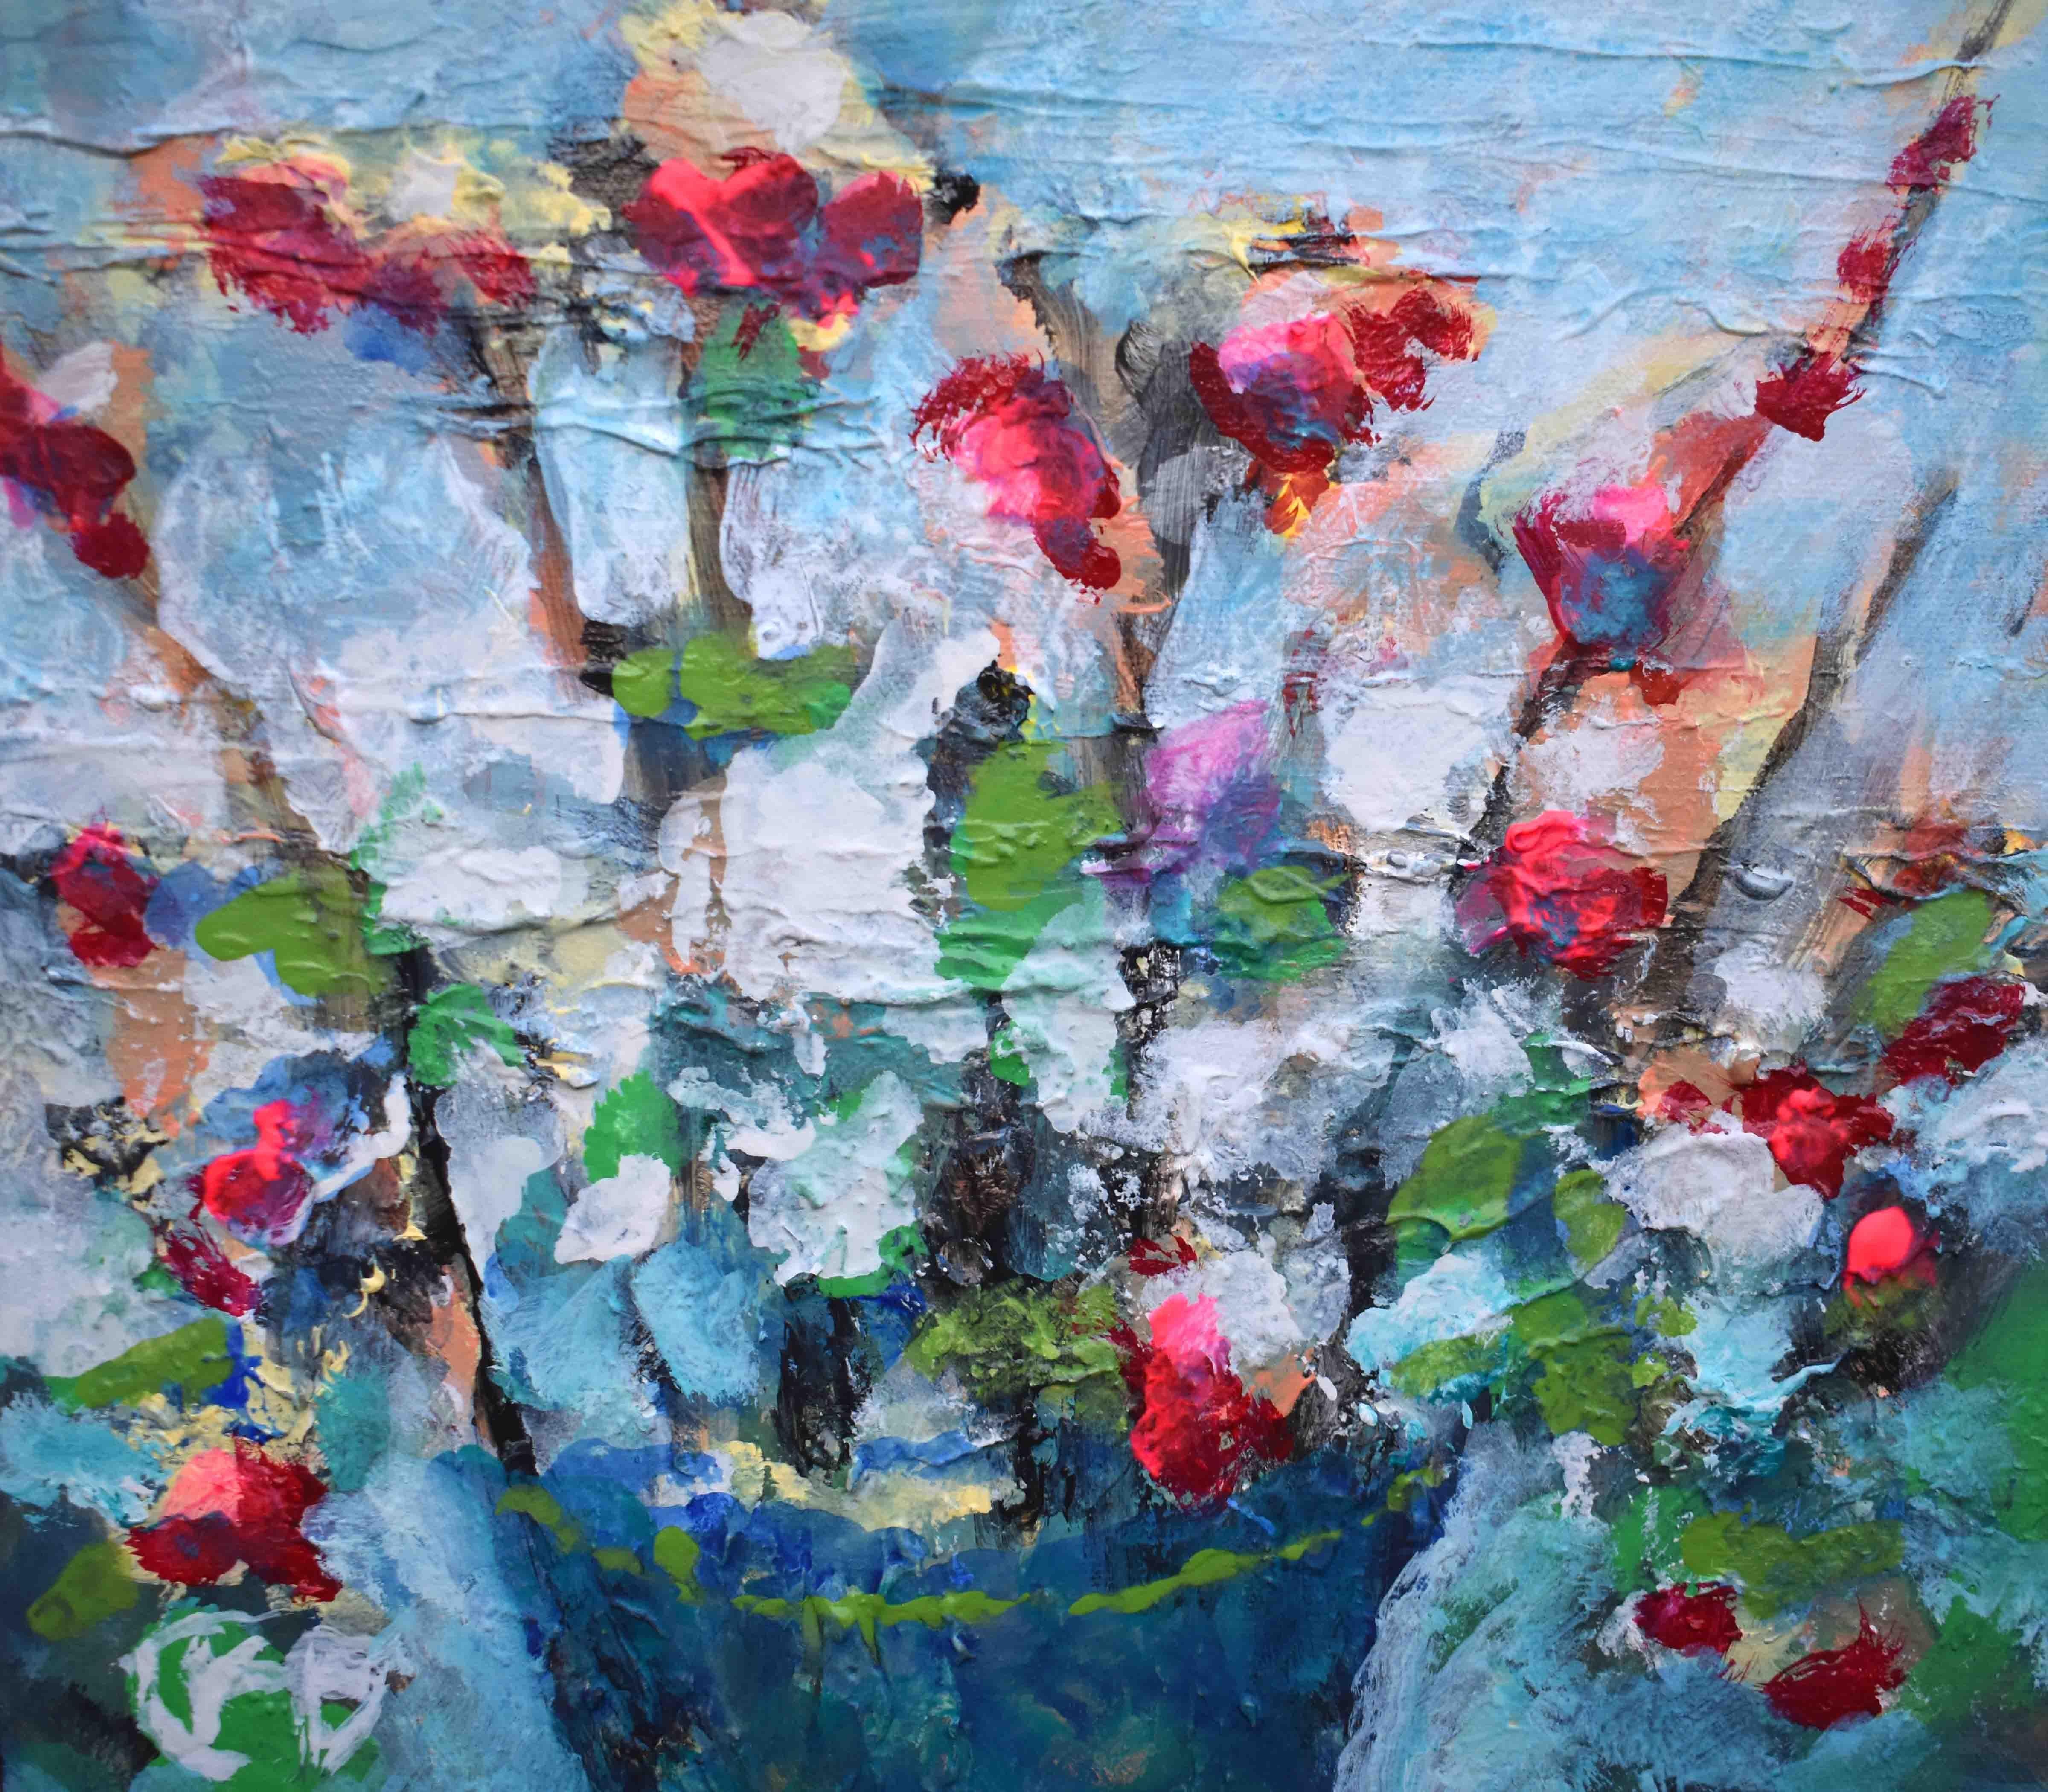 <p>Kommentare des Künstlers<br>Der Künstler Kip Decker präsentiert einen leicht strukturierten floralen Ausdruck in einem Gleichgewicht von hellen und gedämpften Tönen. Er malt blühende Blüten, die in leuchtendem Rot erstrahlen und einen Kontrast zu